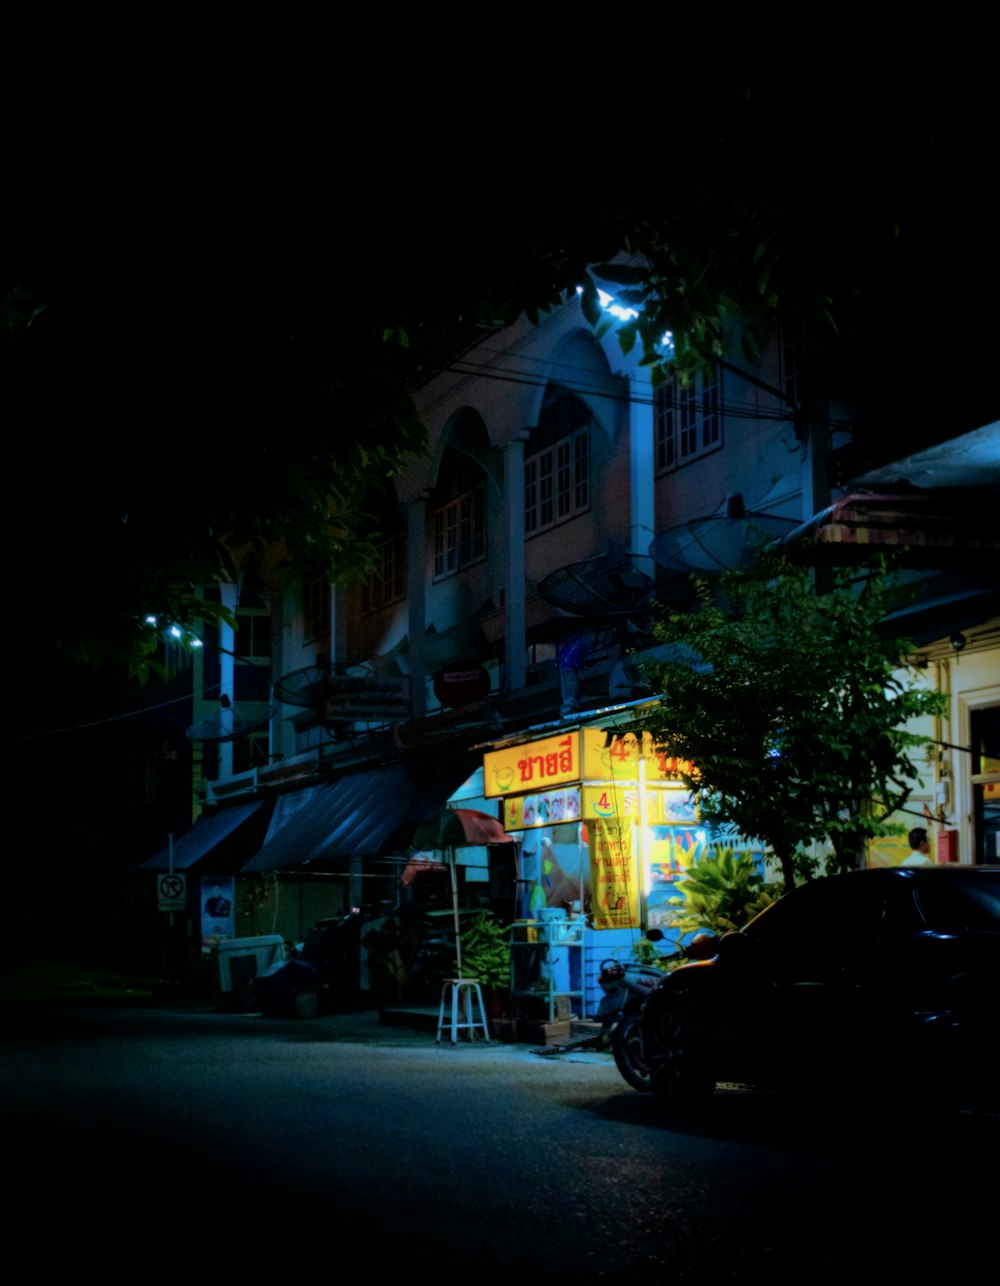 auto parcheggiate davanti al negozio durante le ore notturne